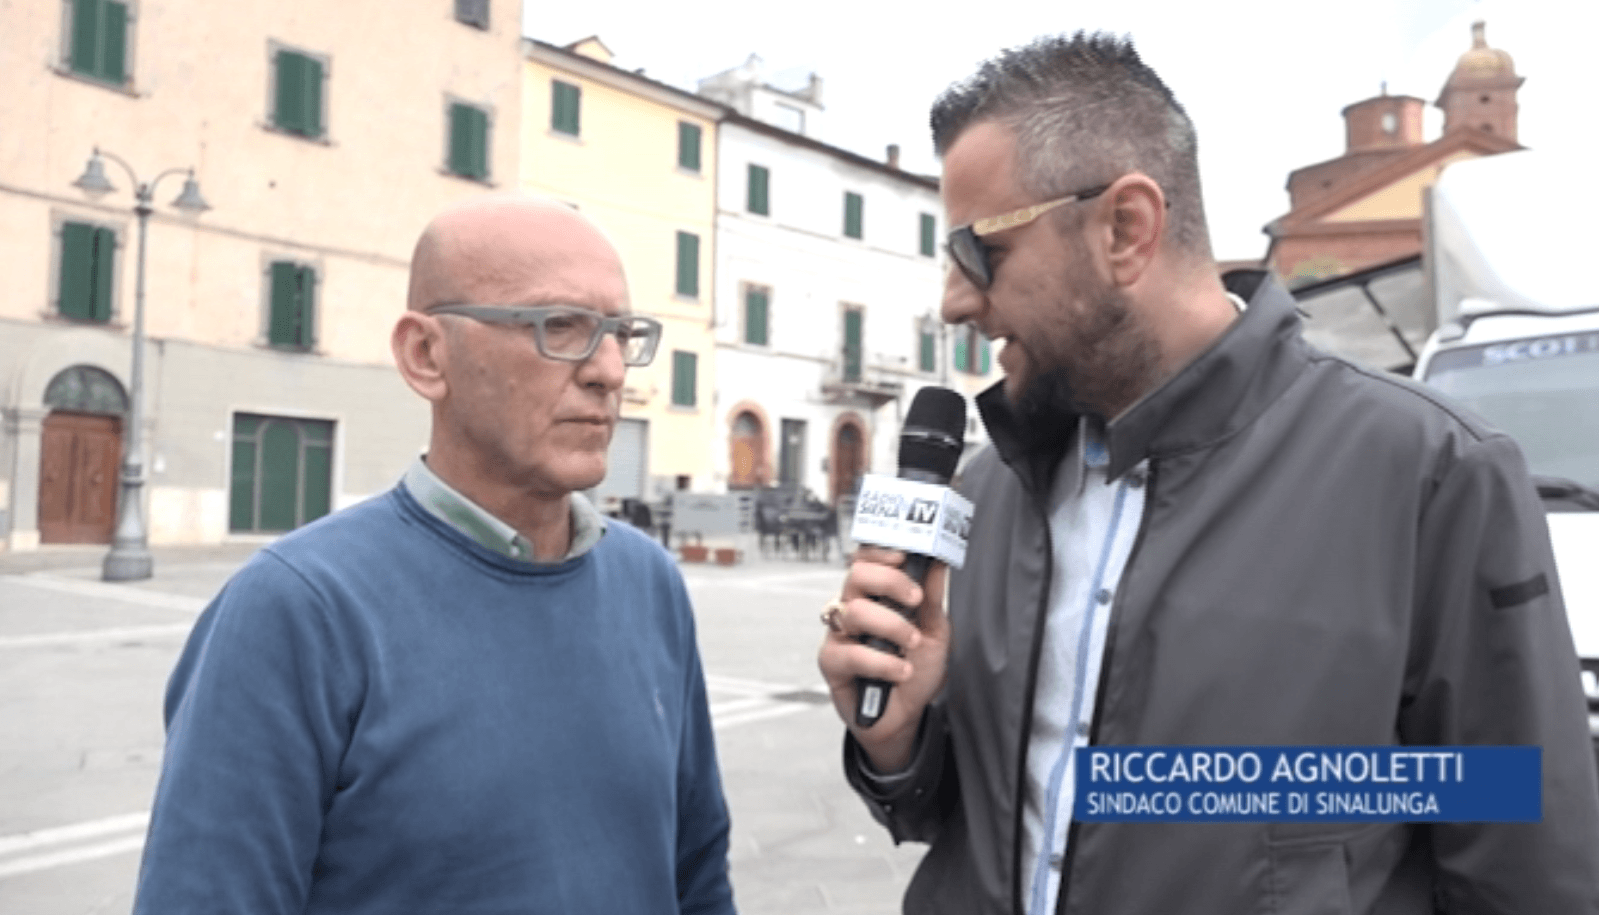 Omicidio Sinalunga, il sindaco Agnoletti a Siena Tv: "Ormai non siamo più tranquilli nemmeno nei borghi della Provincia"